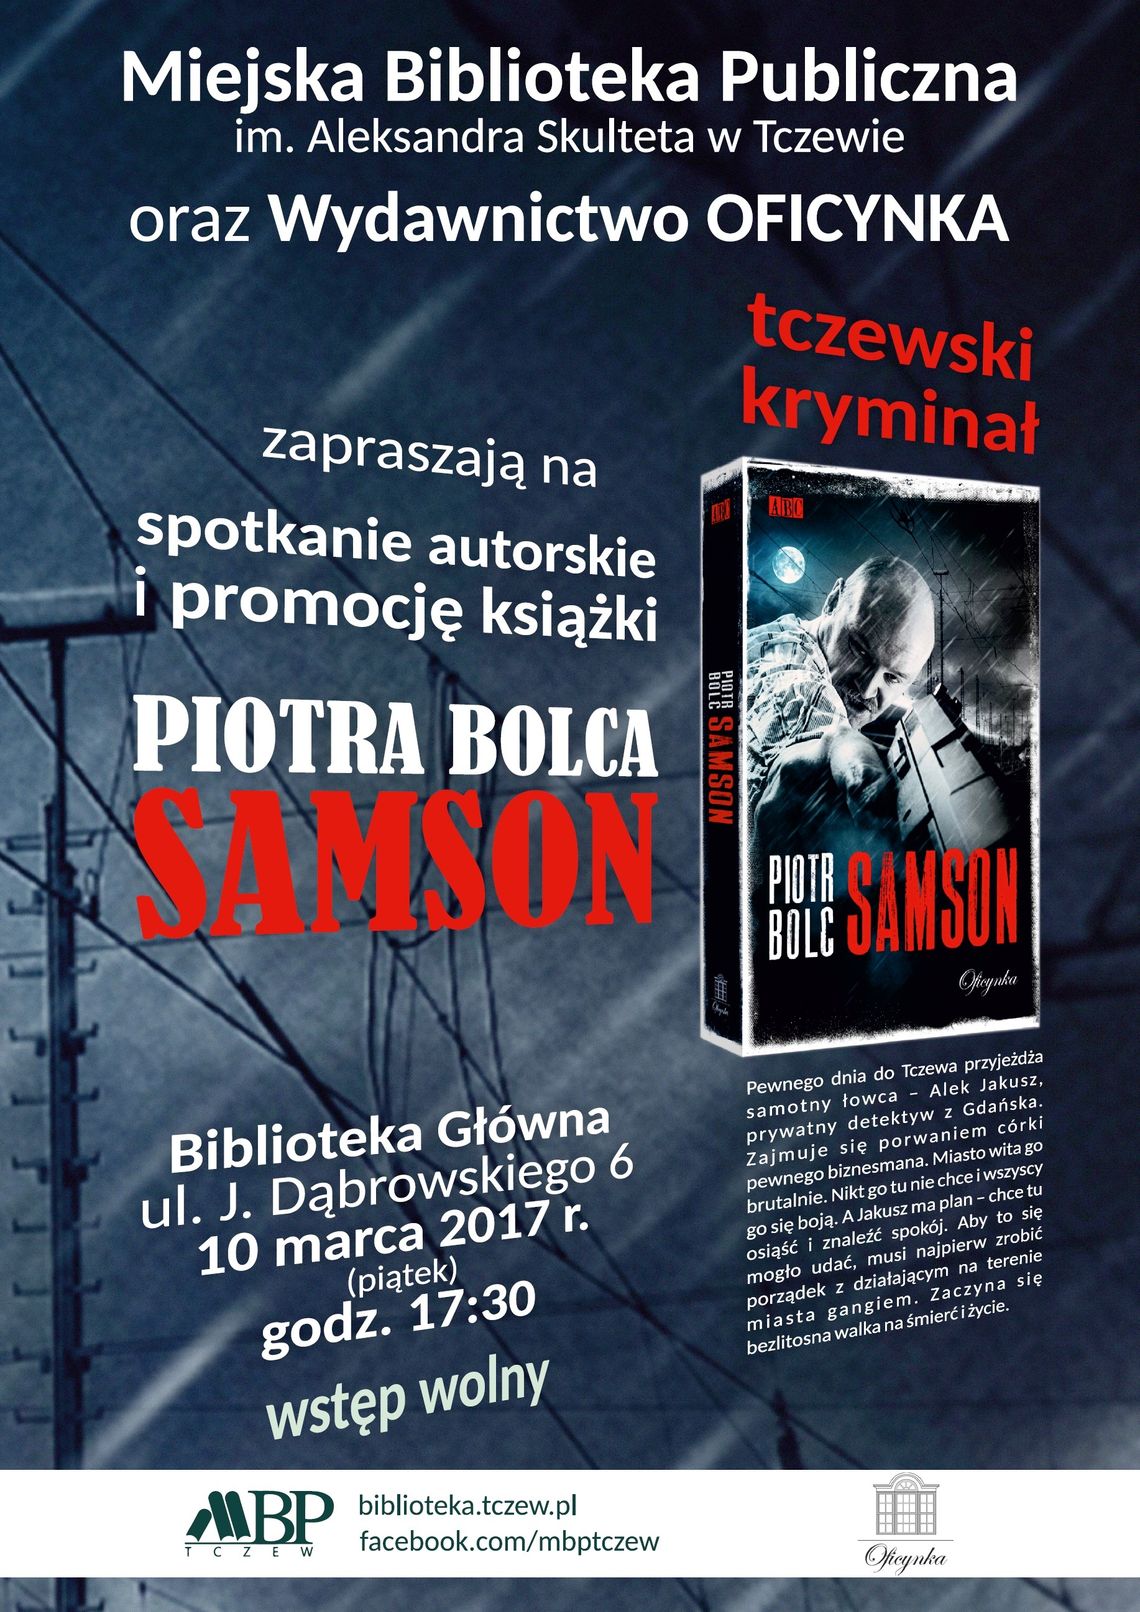 Promocja Książki "Samson" Piotra Bolca